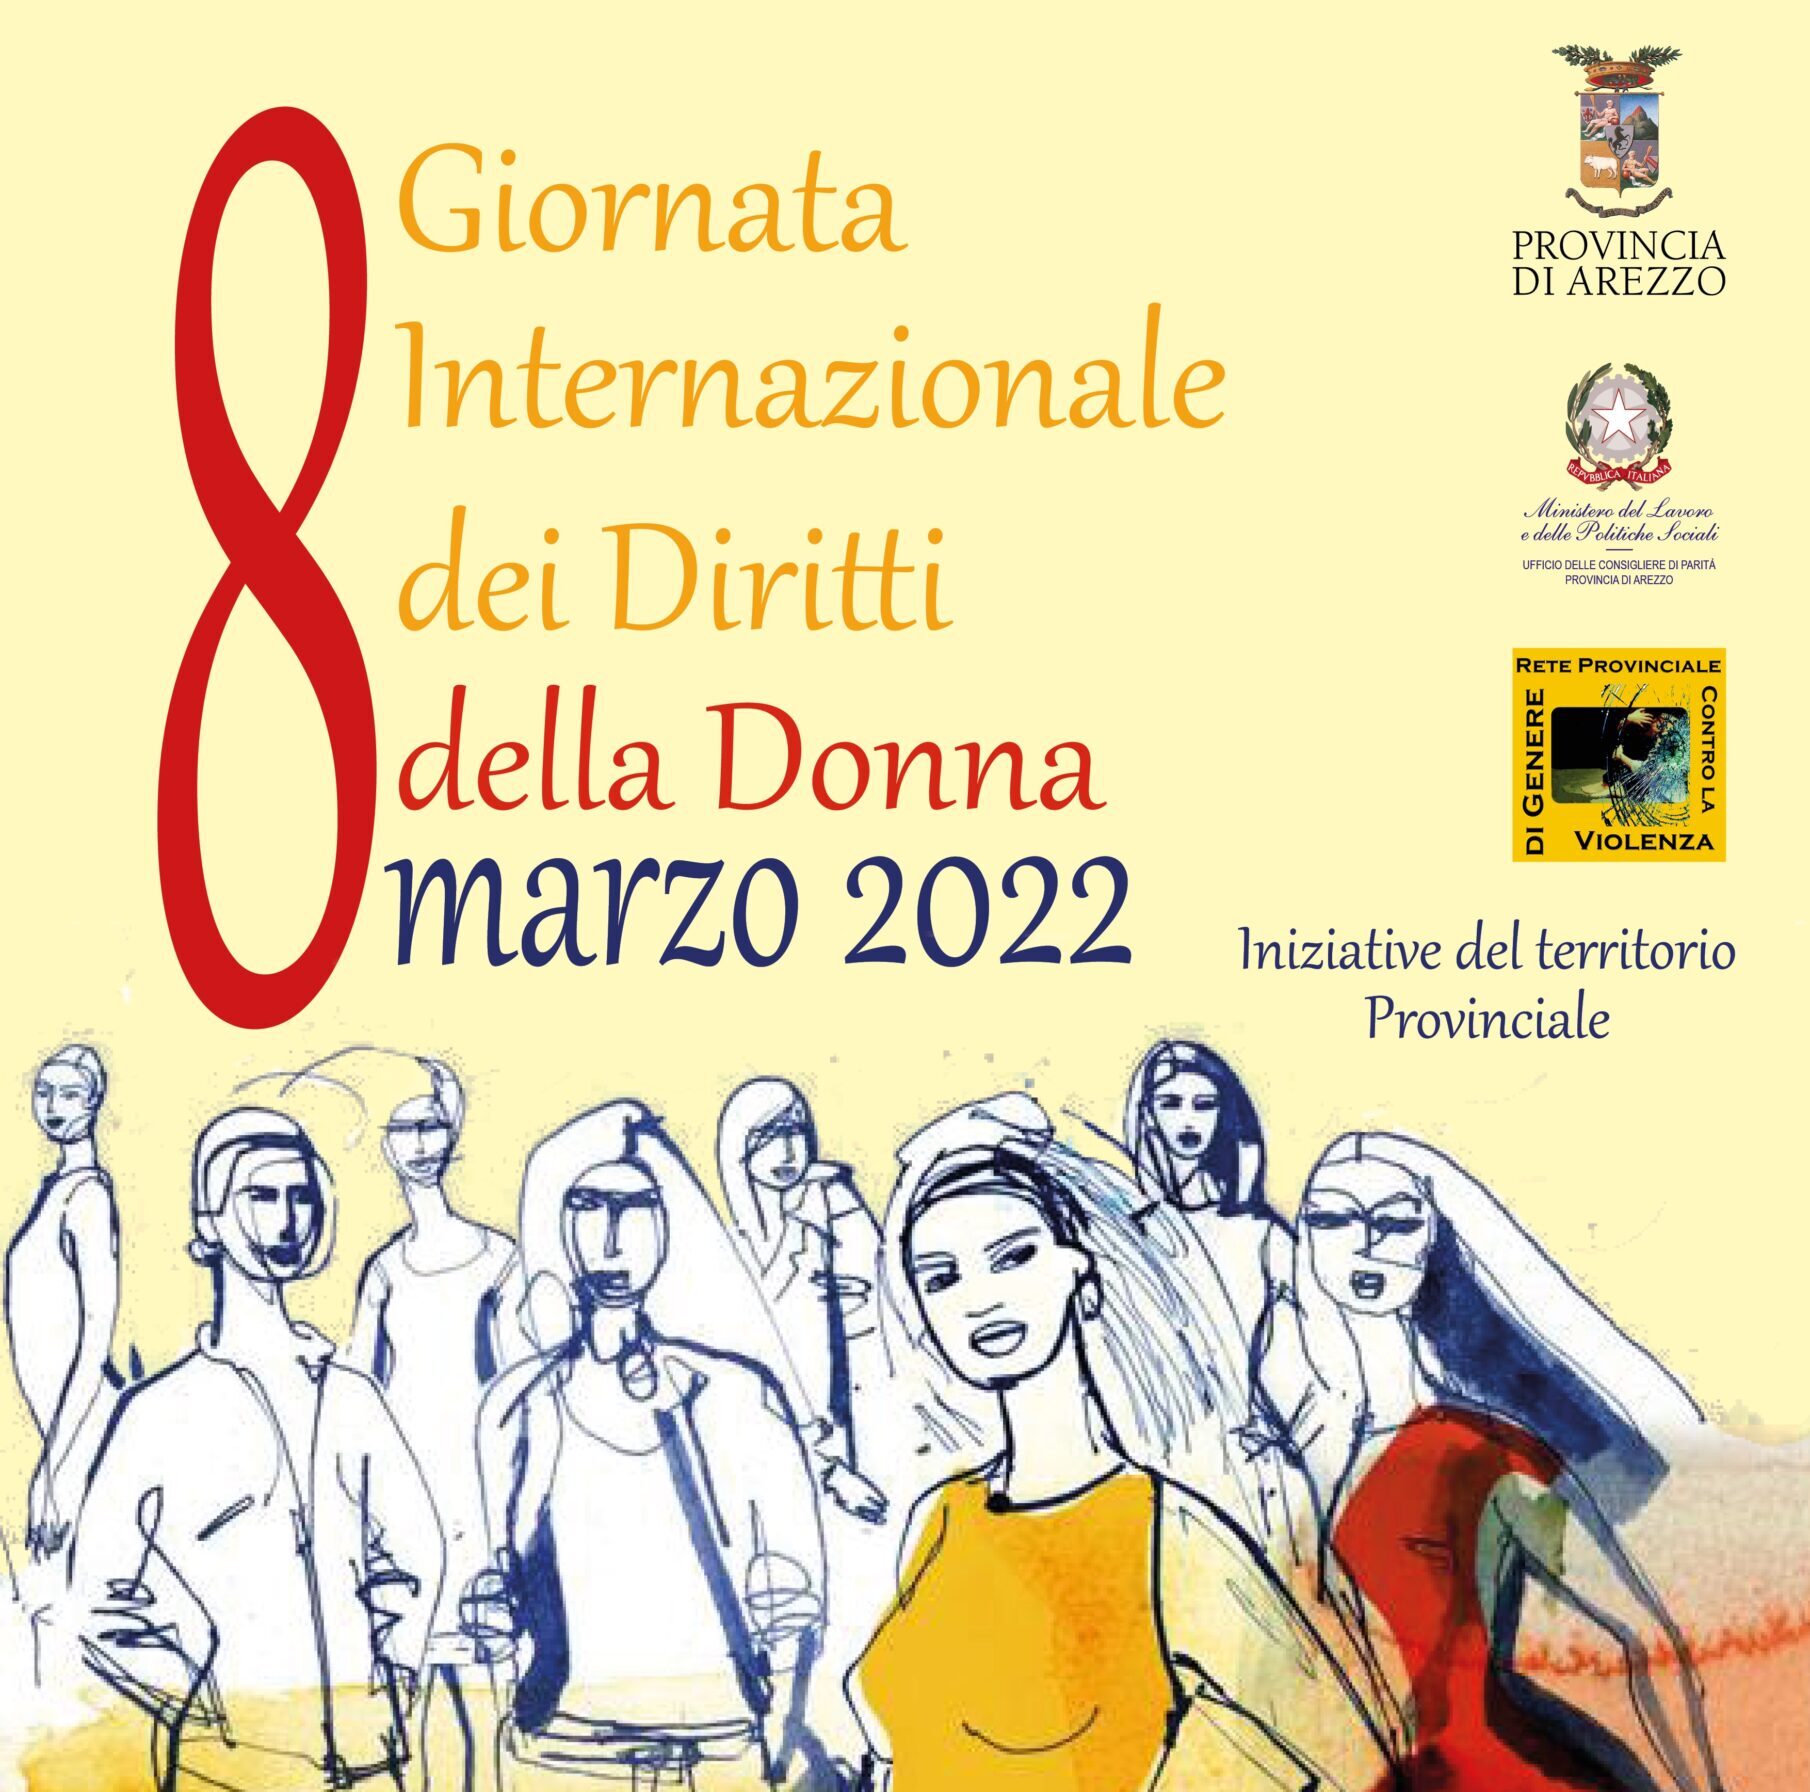 Giornata Internazionale della Donna 2022: le iniziative nel territorio provinciale